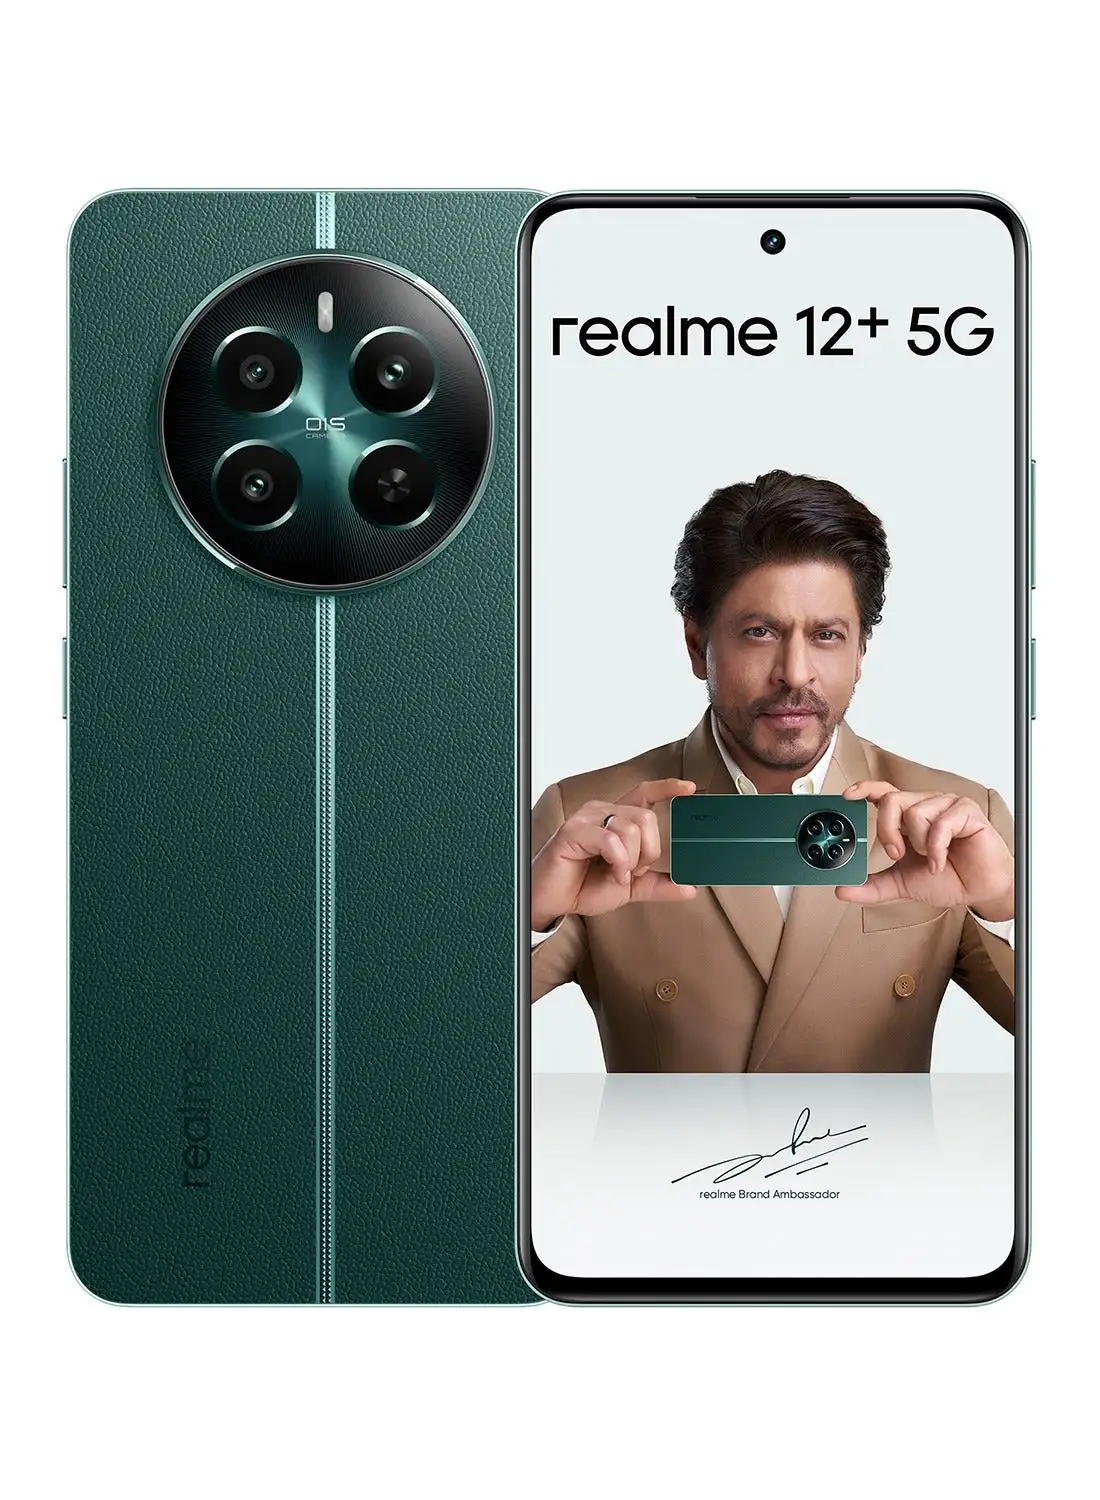 هاتف realme 12+ 5G ثنائي الشريحة، بايونير باللون الأخضر، وذاكرة الوصول العشوائي (RAM) سعة 12 جيجابايت، وسعة 512 جيجابايت - إصدار الشرق الأوسط